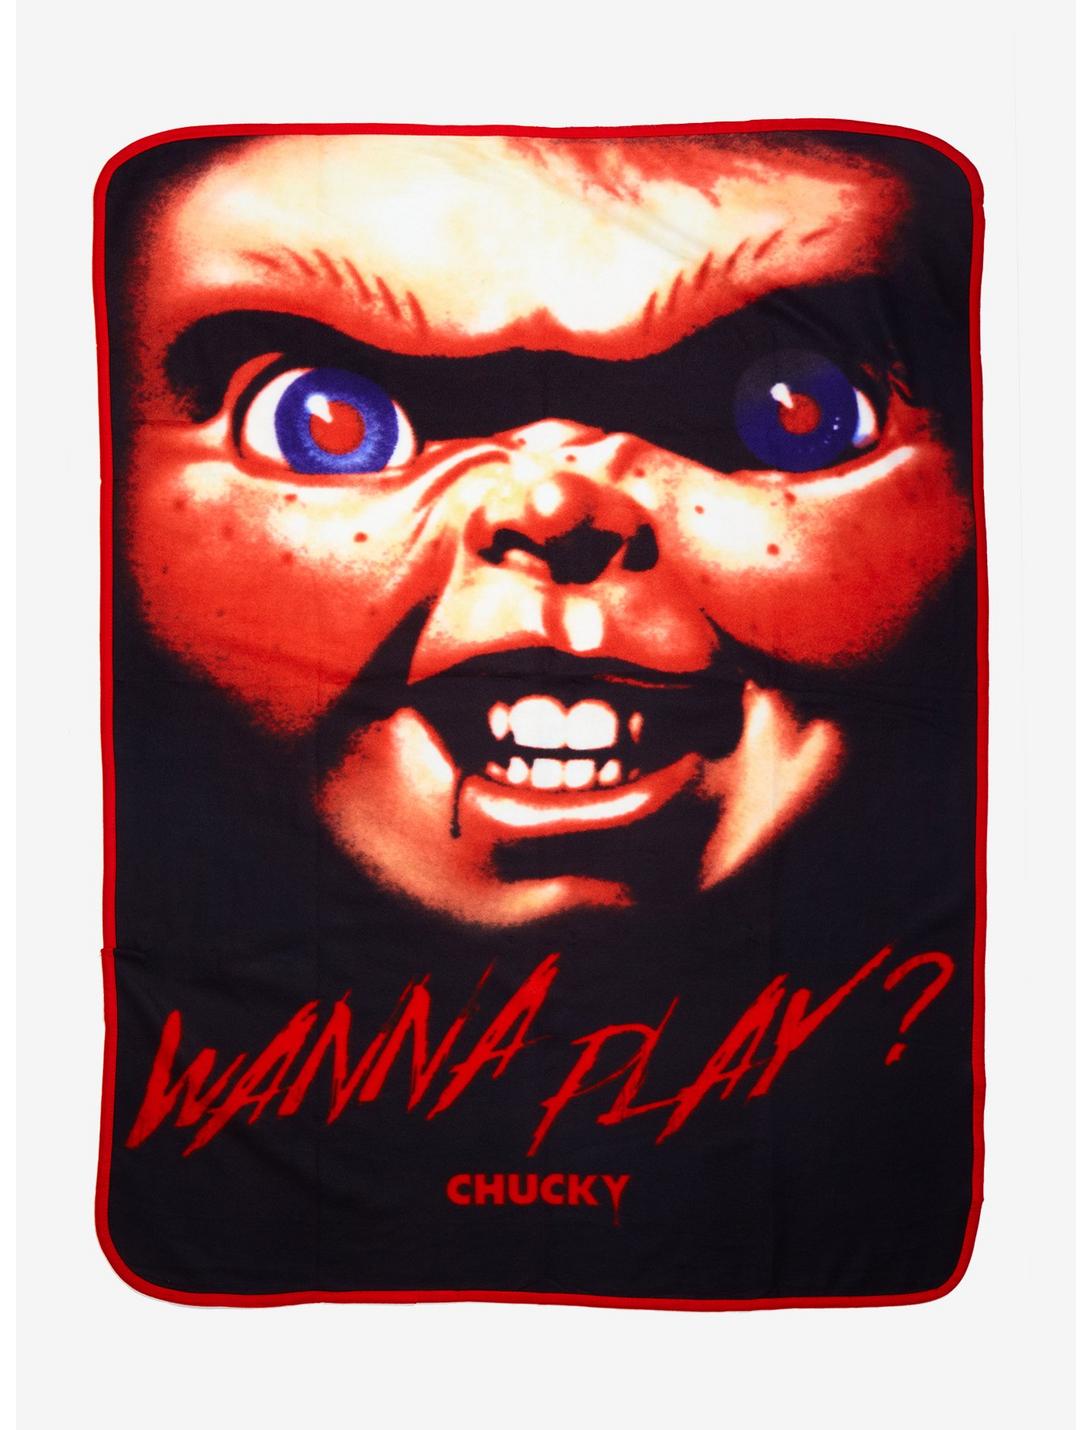 Child's Play Chucky Wanna Play Throw Blanket, , hi-res